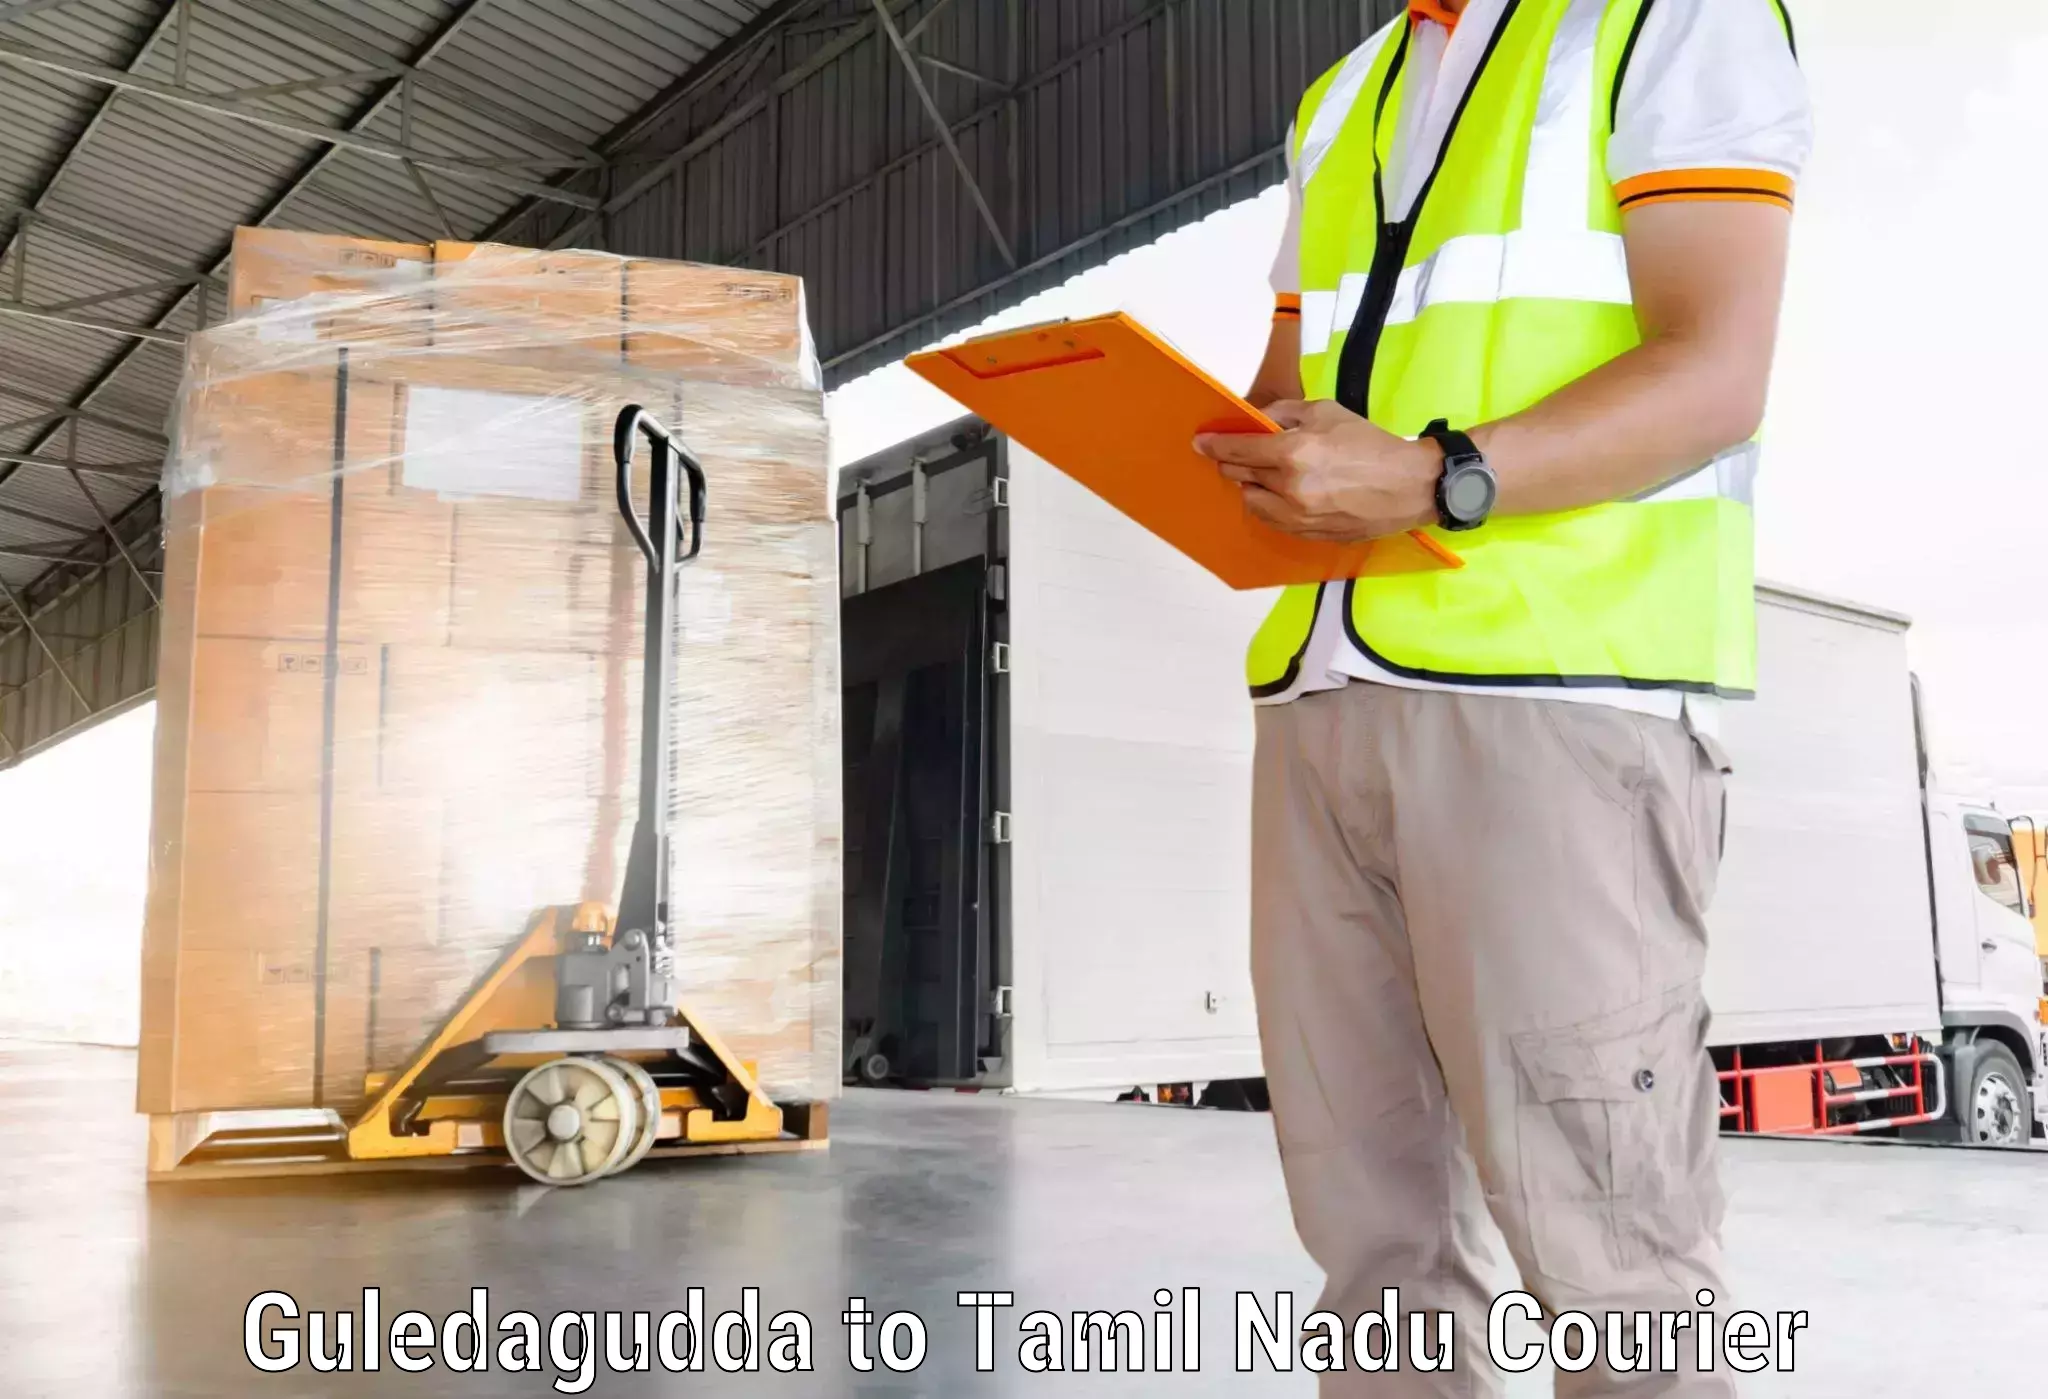 Cargo courier service Guledagudda to Gingee